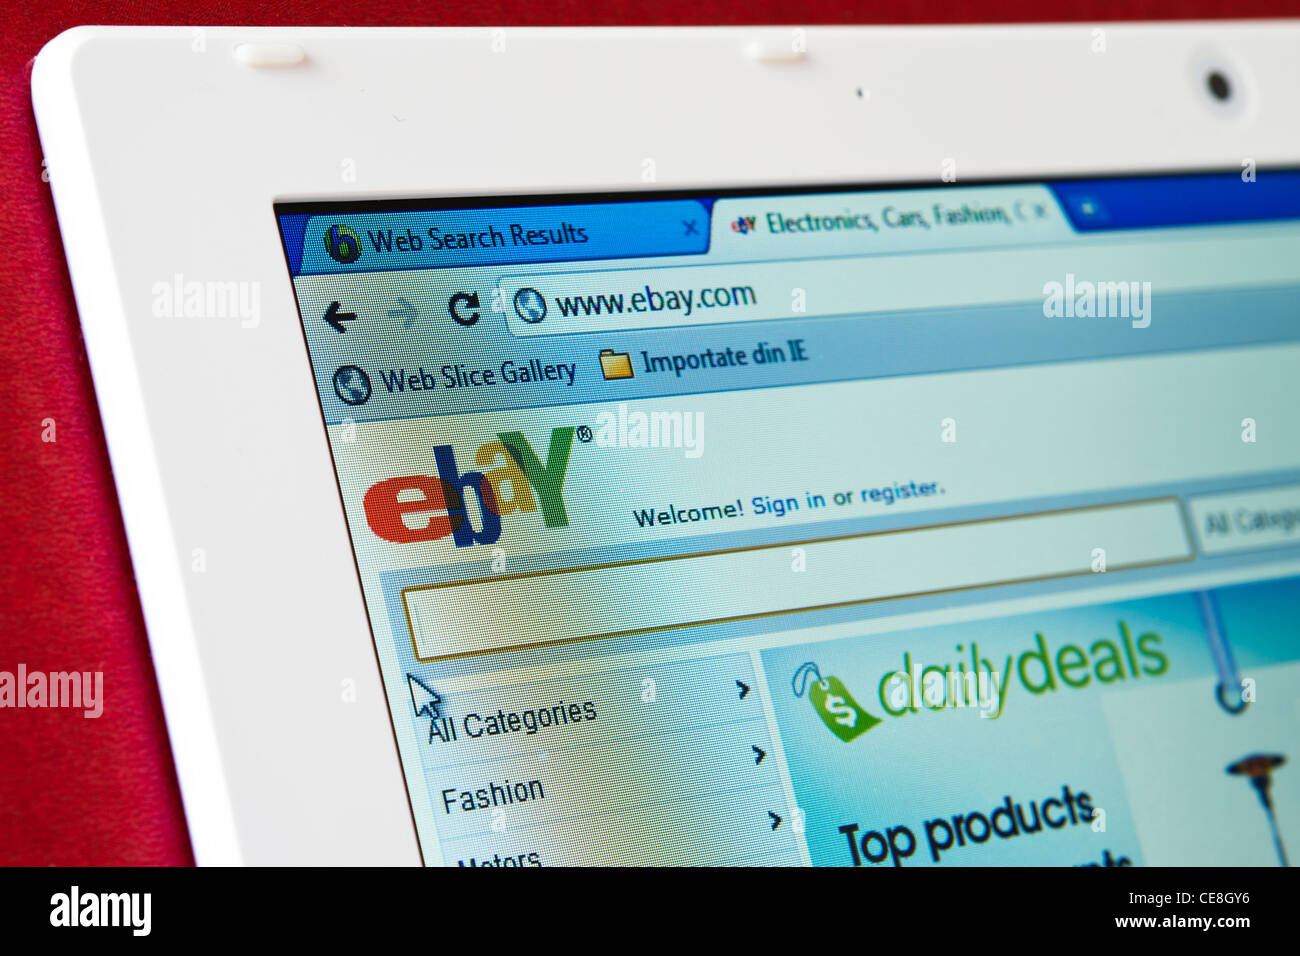 Página de inicio del sitio web de Ebay.com en la pantalla de un ordenador portátil Foto de stock